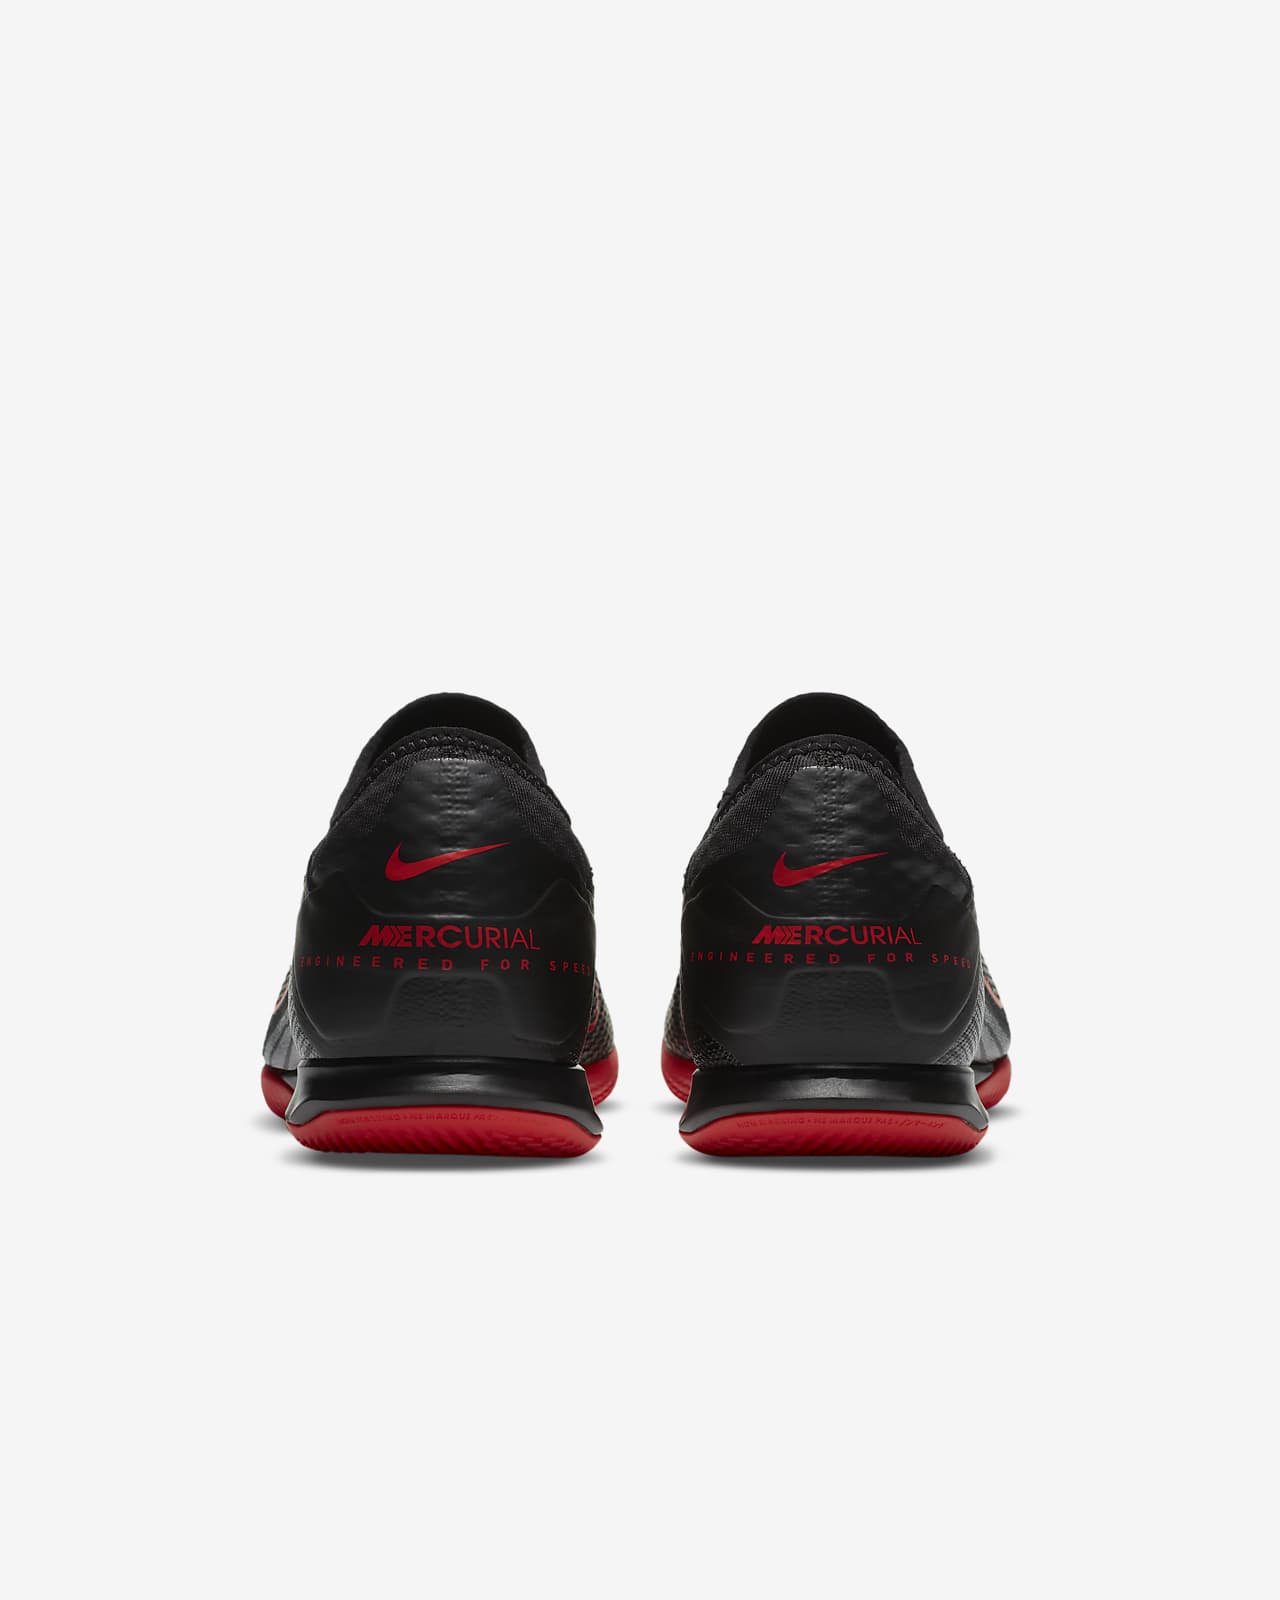 Calzado de fútbol para cancha cubierta Nike Mercurial Vapor 13 Pro IC. Nike .com